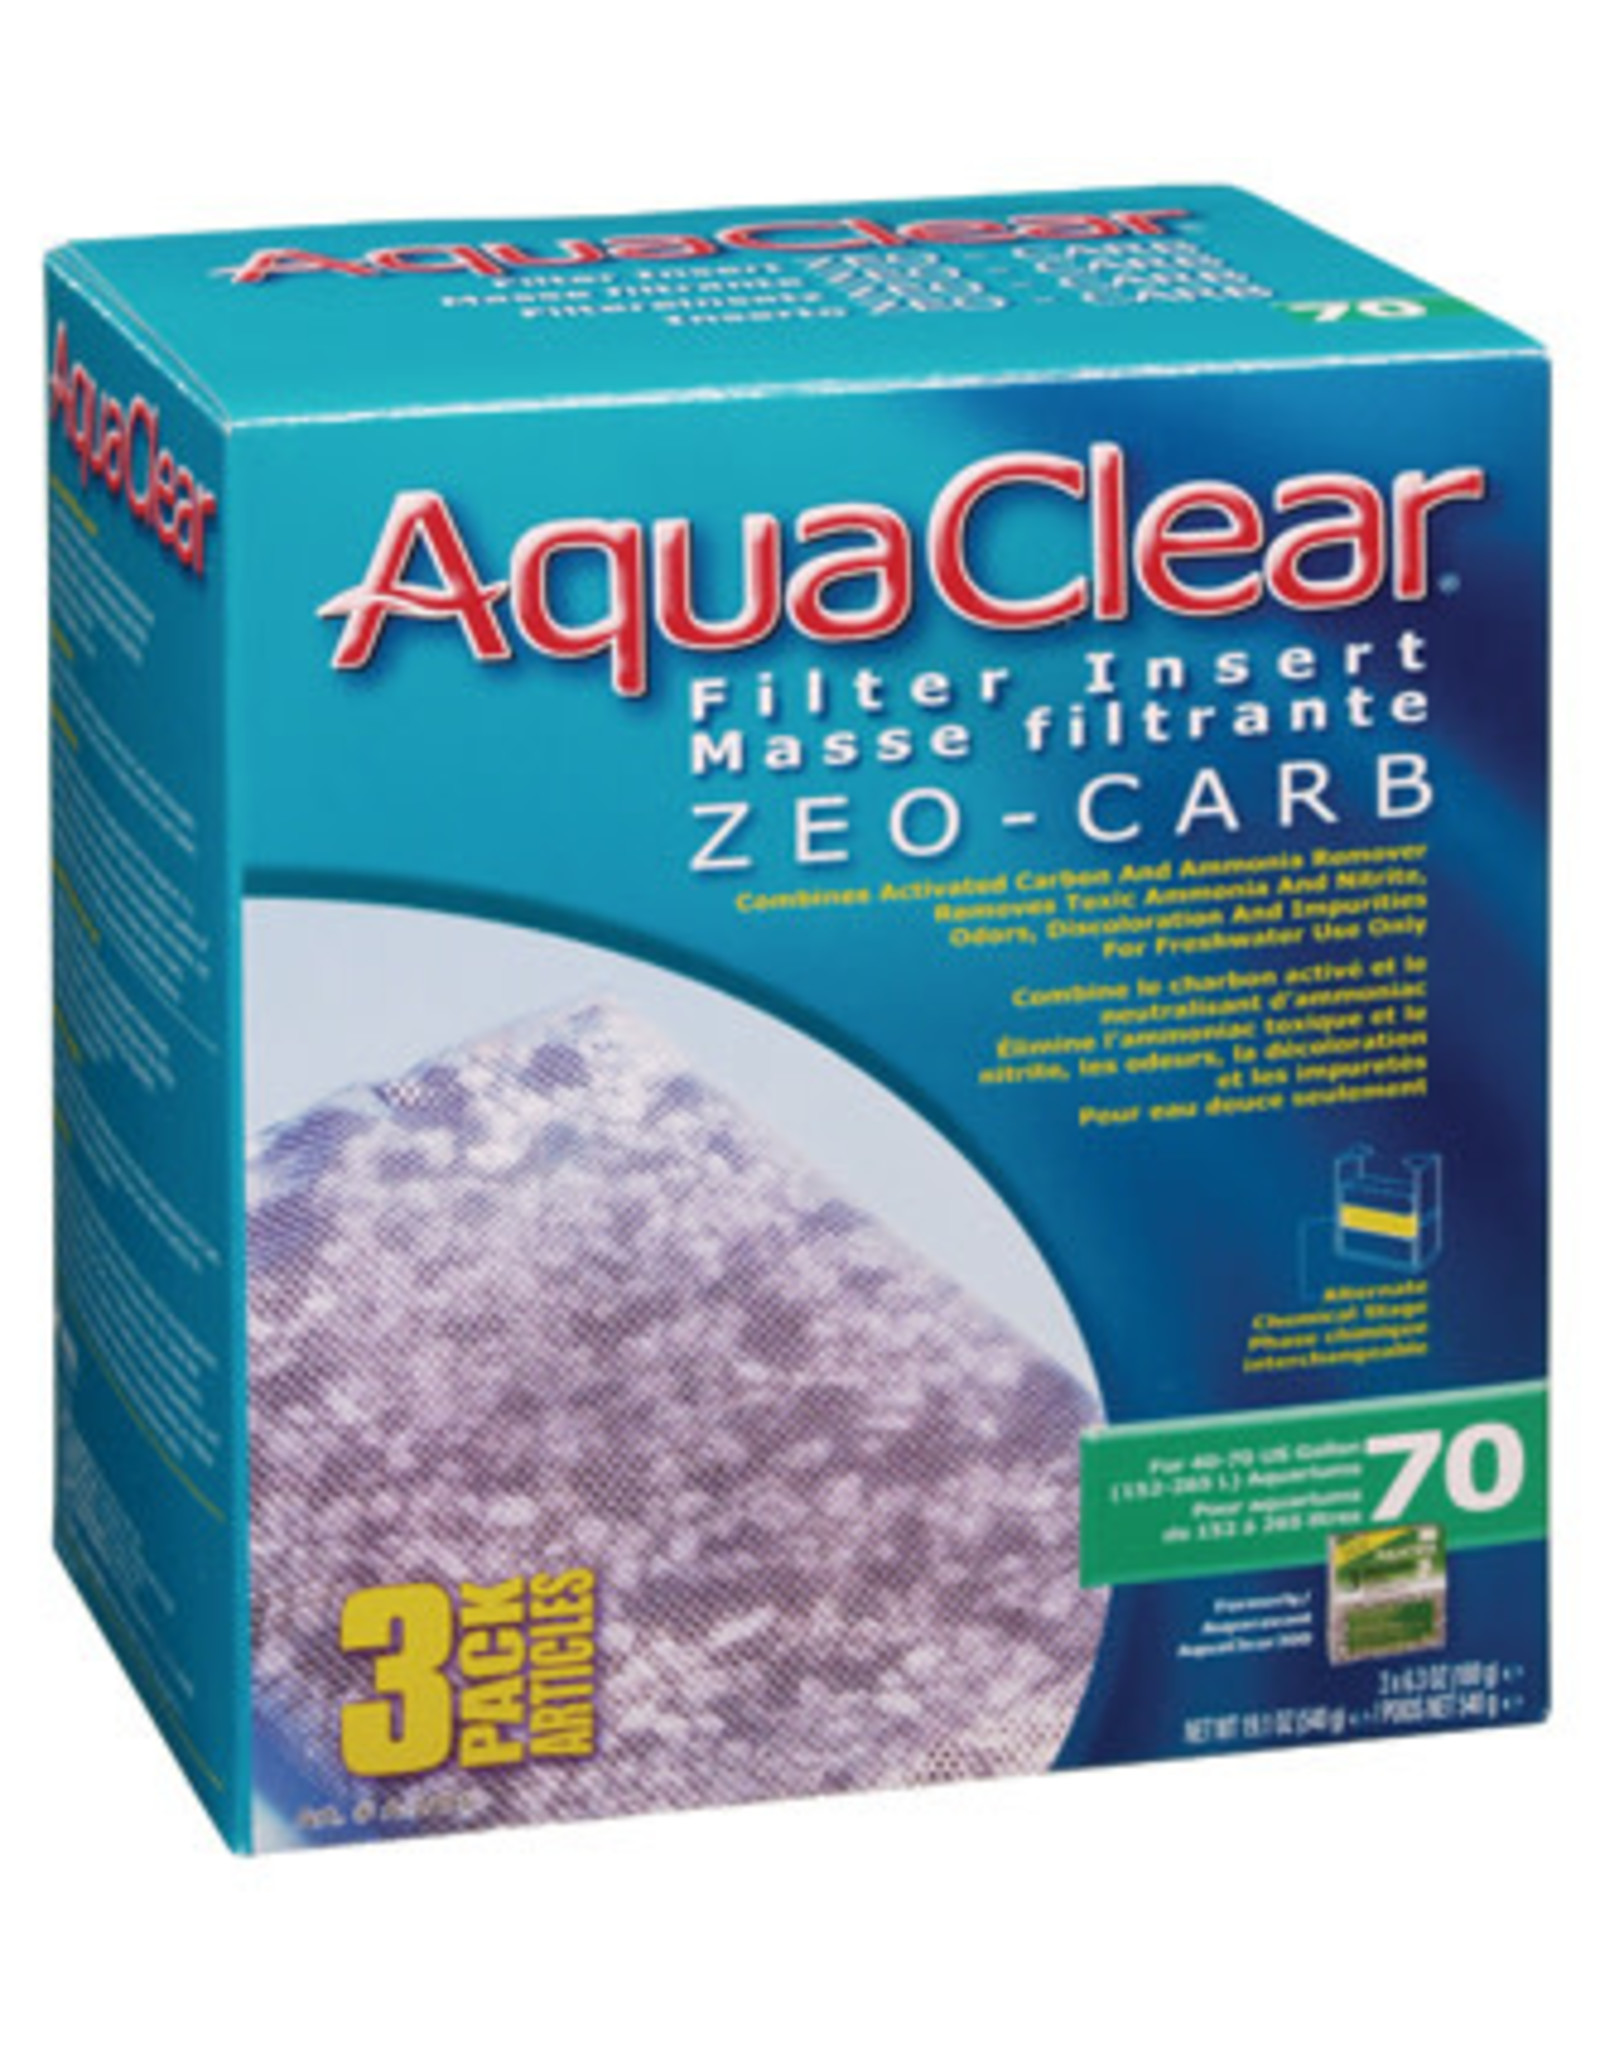 AquaClear AquaClear 70 Zeo-Carb Filter insert 3 Pack 540g